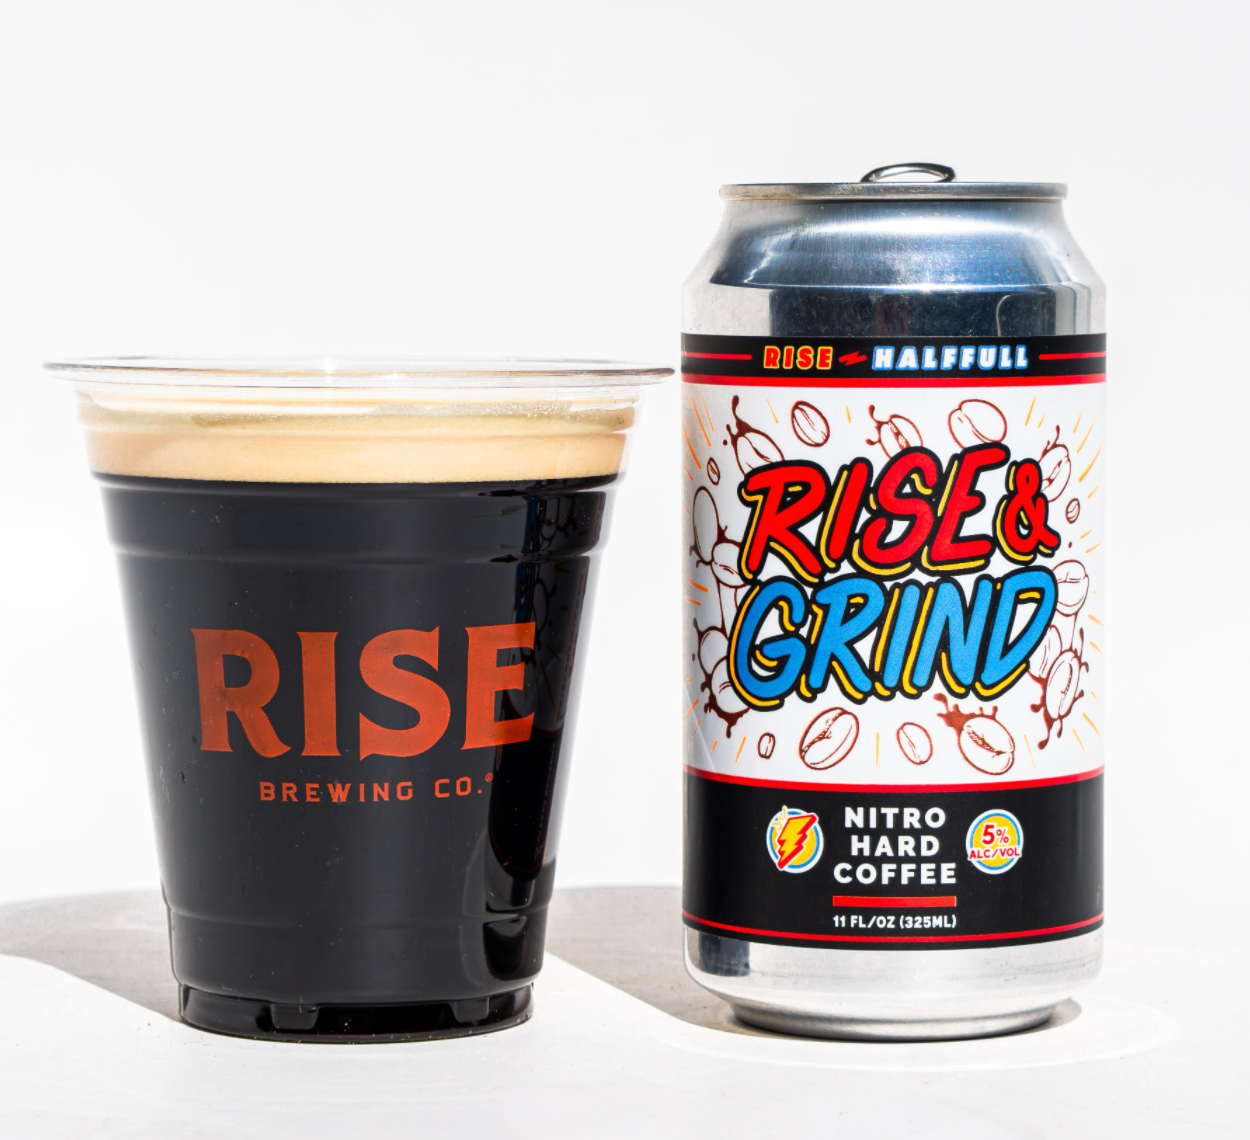 RISE Brewing Co. Nitro Hard Coffee